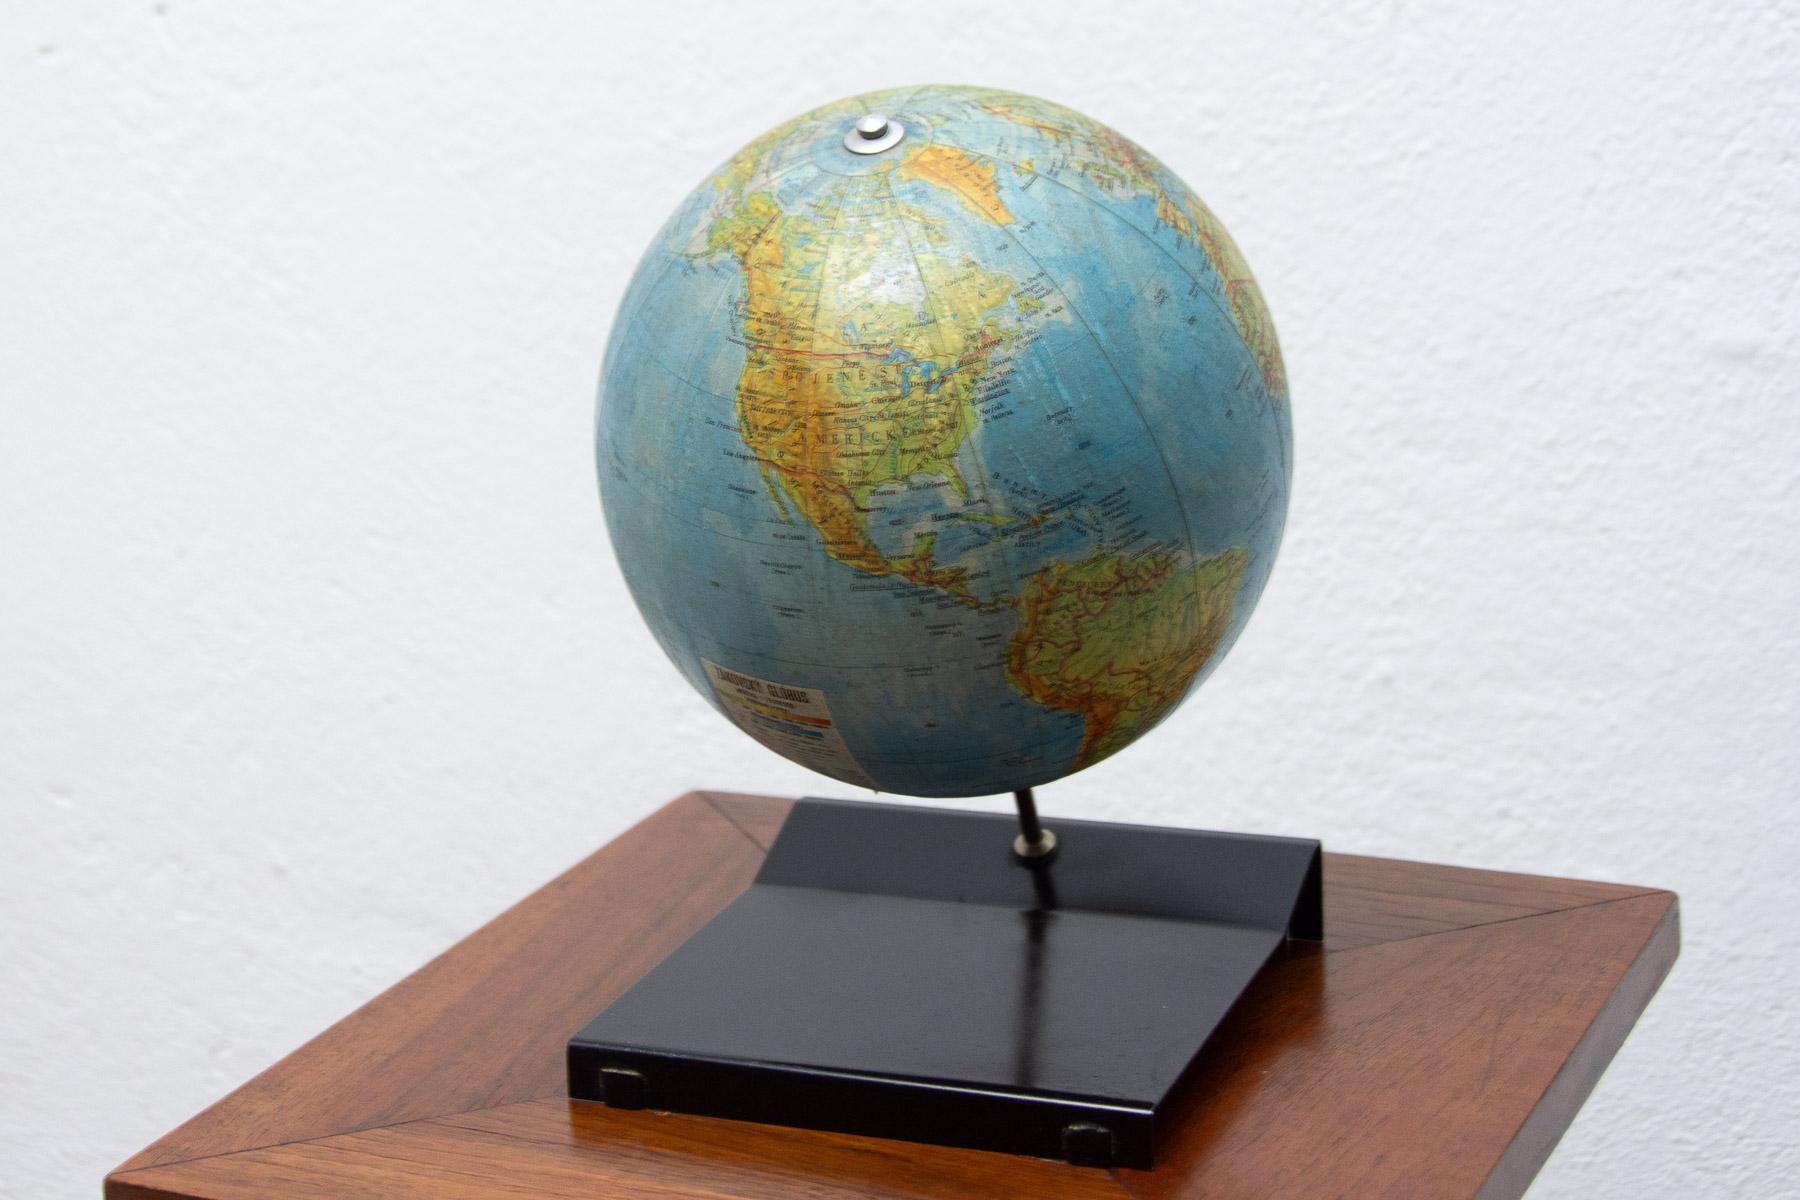 Ce globe terrestre vintage a été fabriqué dans les années 1970 dans l'ancienne Tchécoslovaquie pour des fournitures scolaires.

Il est fait de plastique, de bois et de carton. Il est en bon état vintage.

Mesures : Diamètre 17cm.

Hauteur : 25